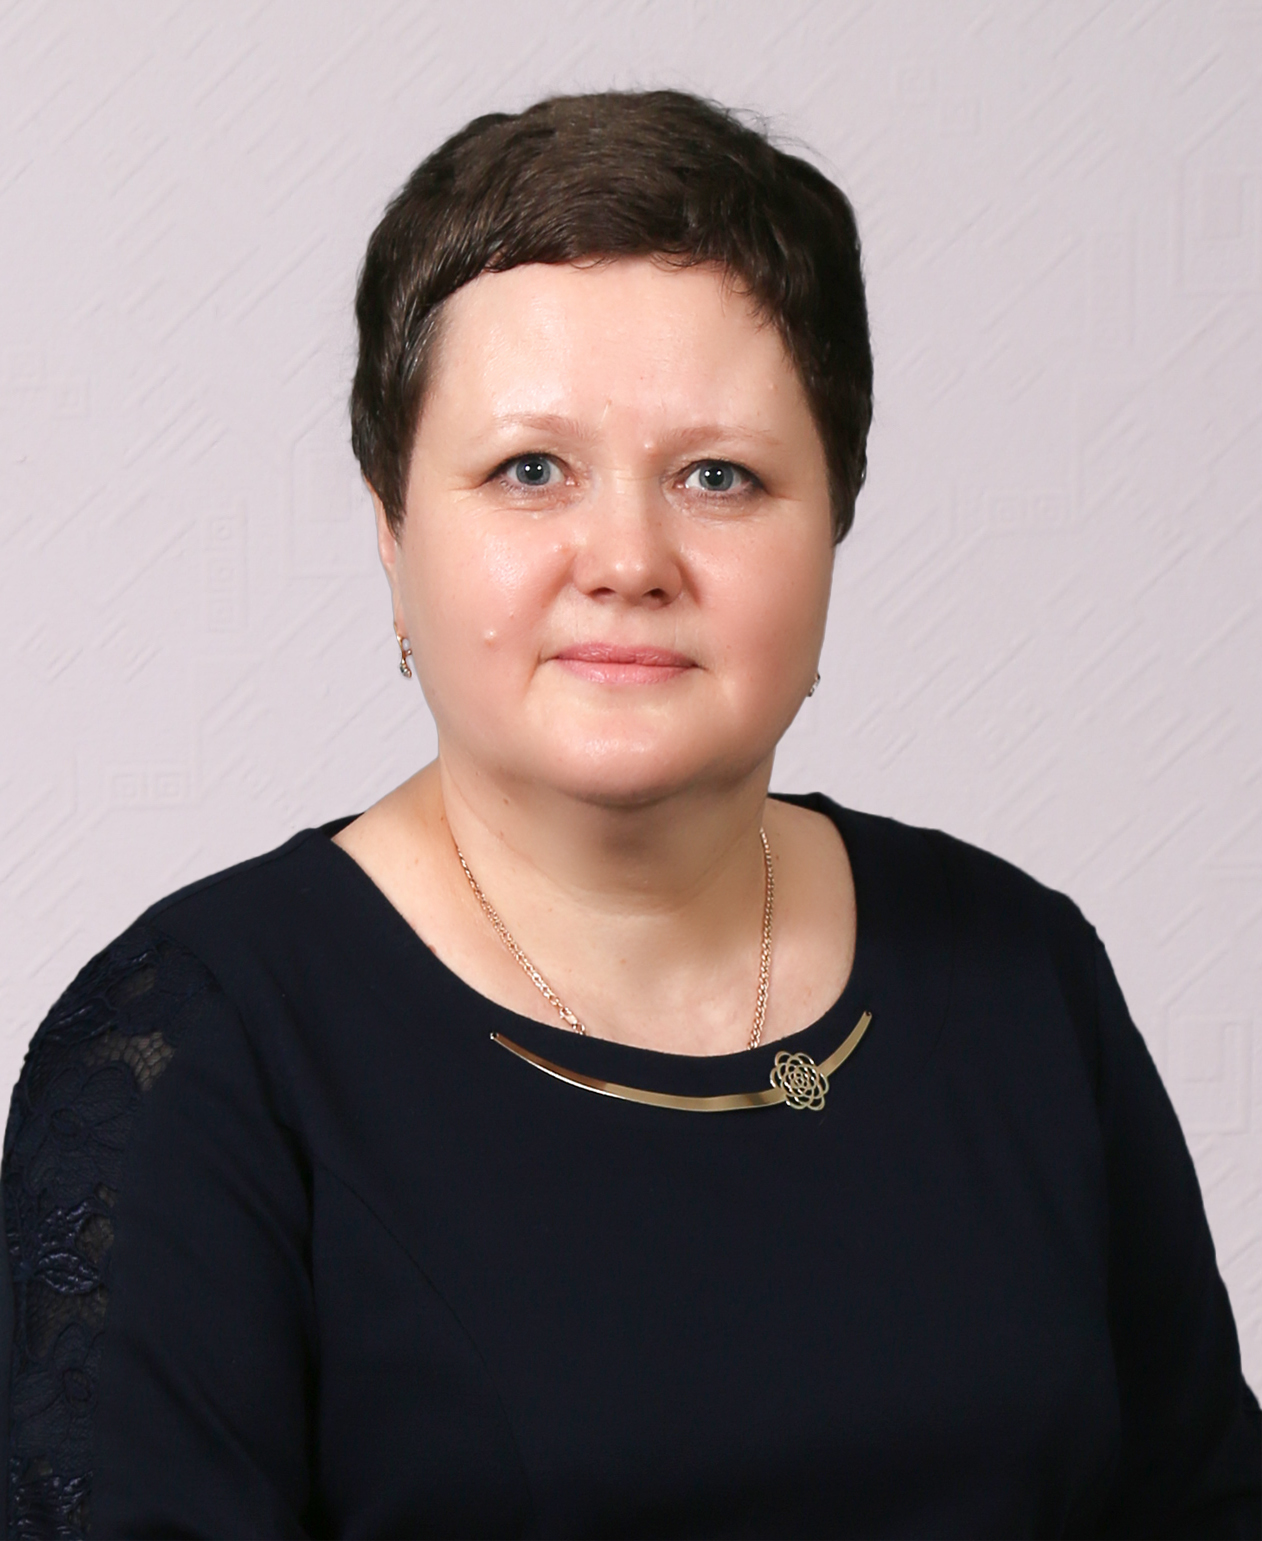 Педагогический работник Горькавая Наталья Сергеевна.